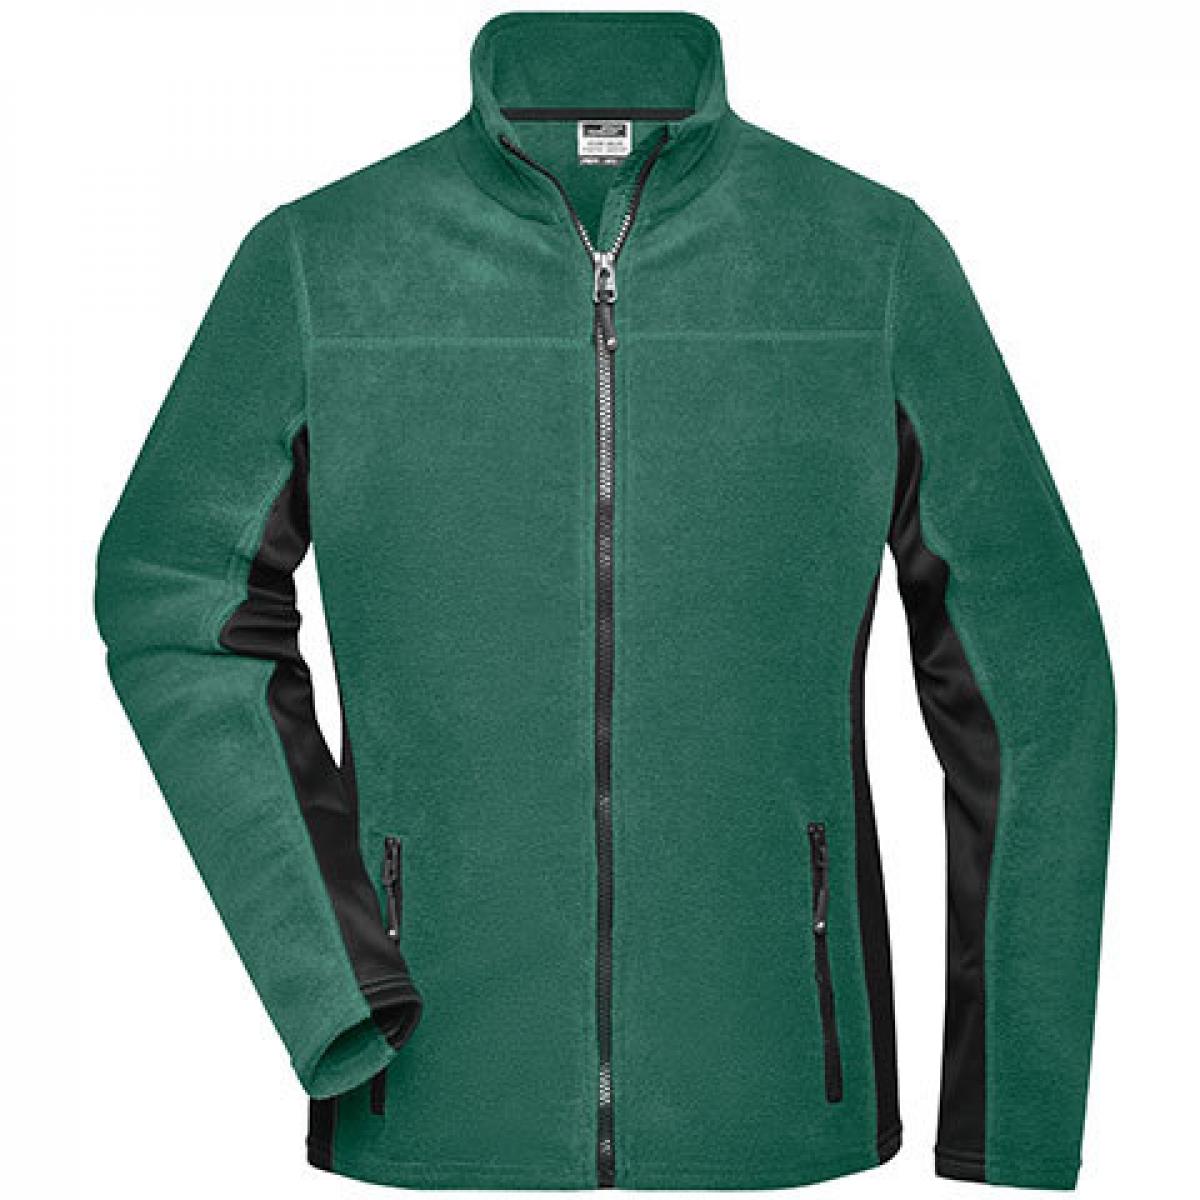 Hersteller: James+Nicholson Herstellernummer: JN841 Artikelbezeichnung: Damen‘ Workwear Fleece Jacket -STRONG- Farbe: Dark Green/Black